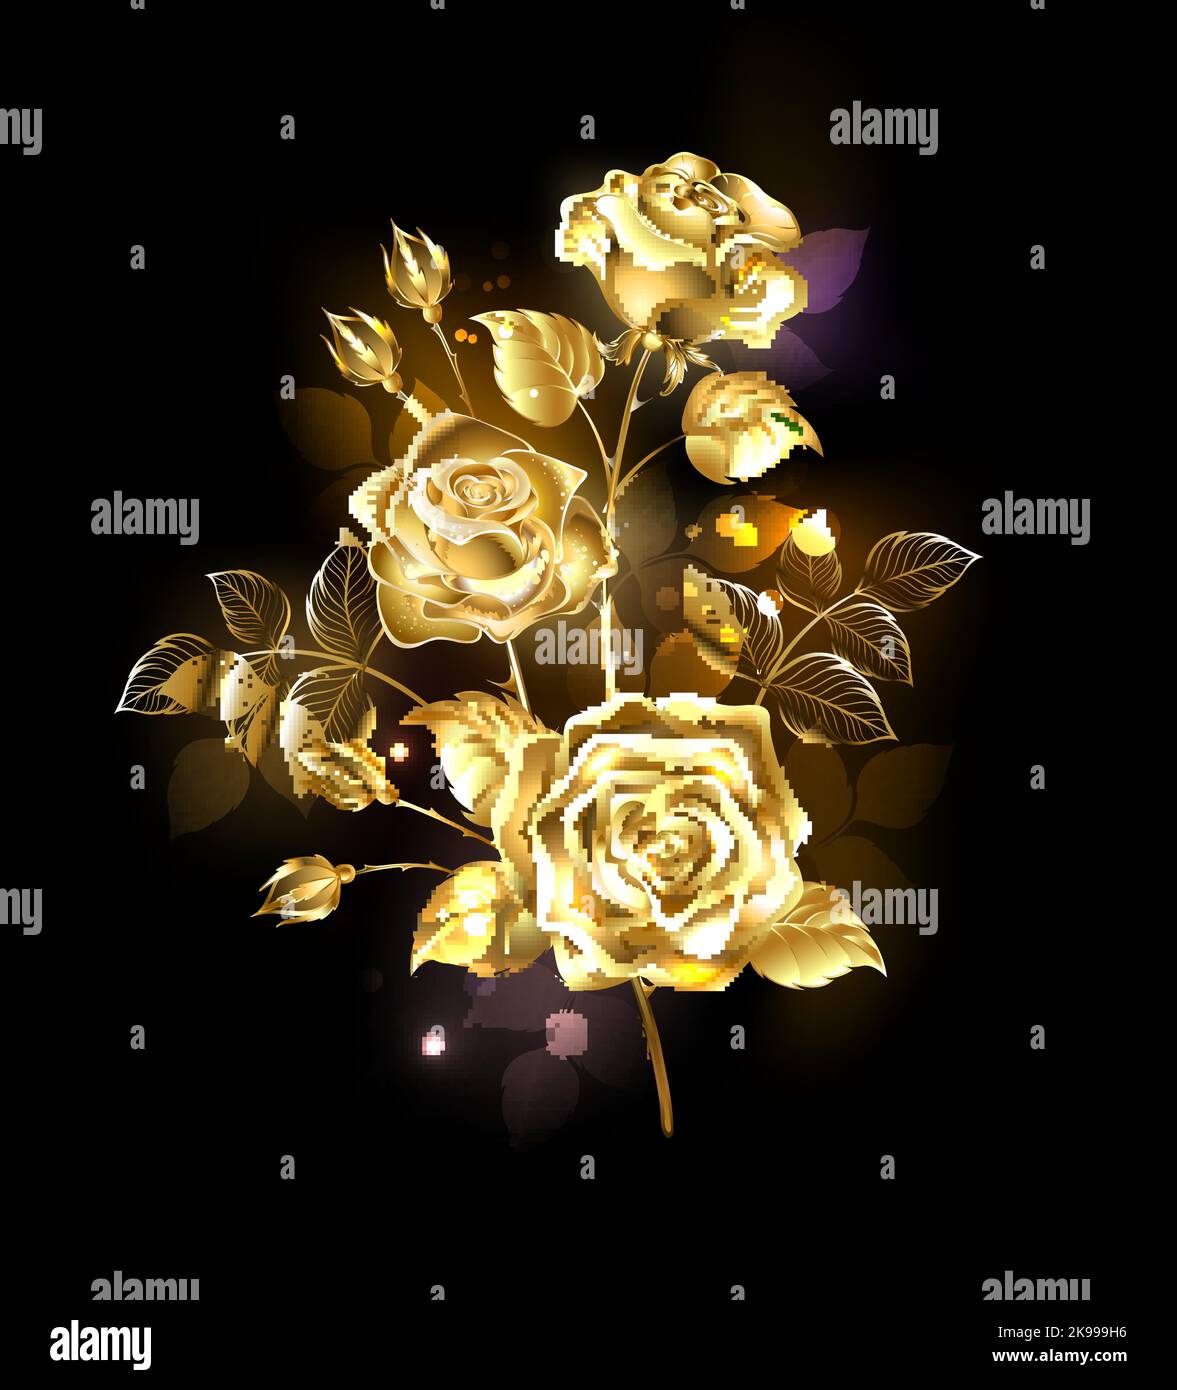 Zweig aus kunstvoll bemaltem Gold, Schmuckrosen mit goldenen Blättern und vergoldeten Knospen auf schwarzem, glühendem Hintergrund. Goldrose. Stock Vektor